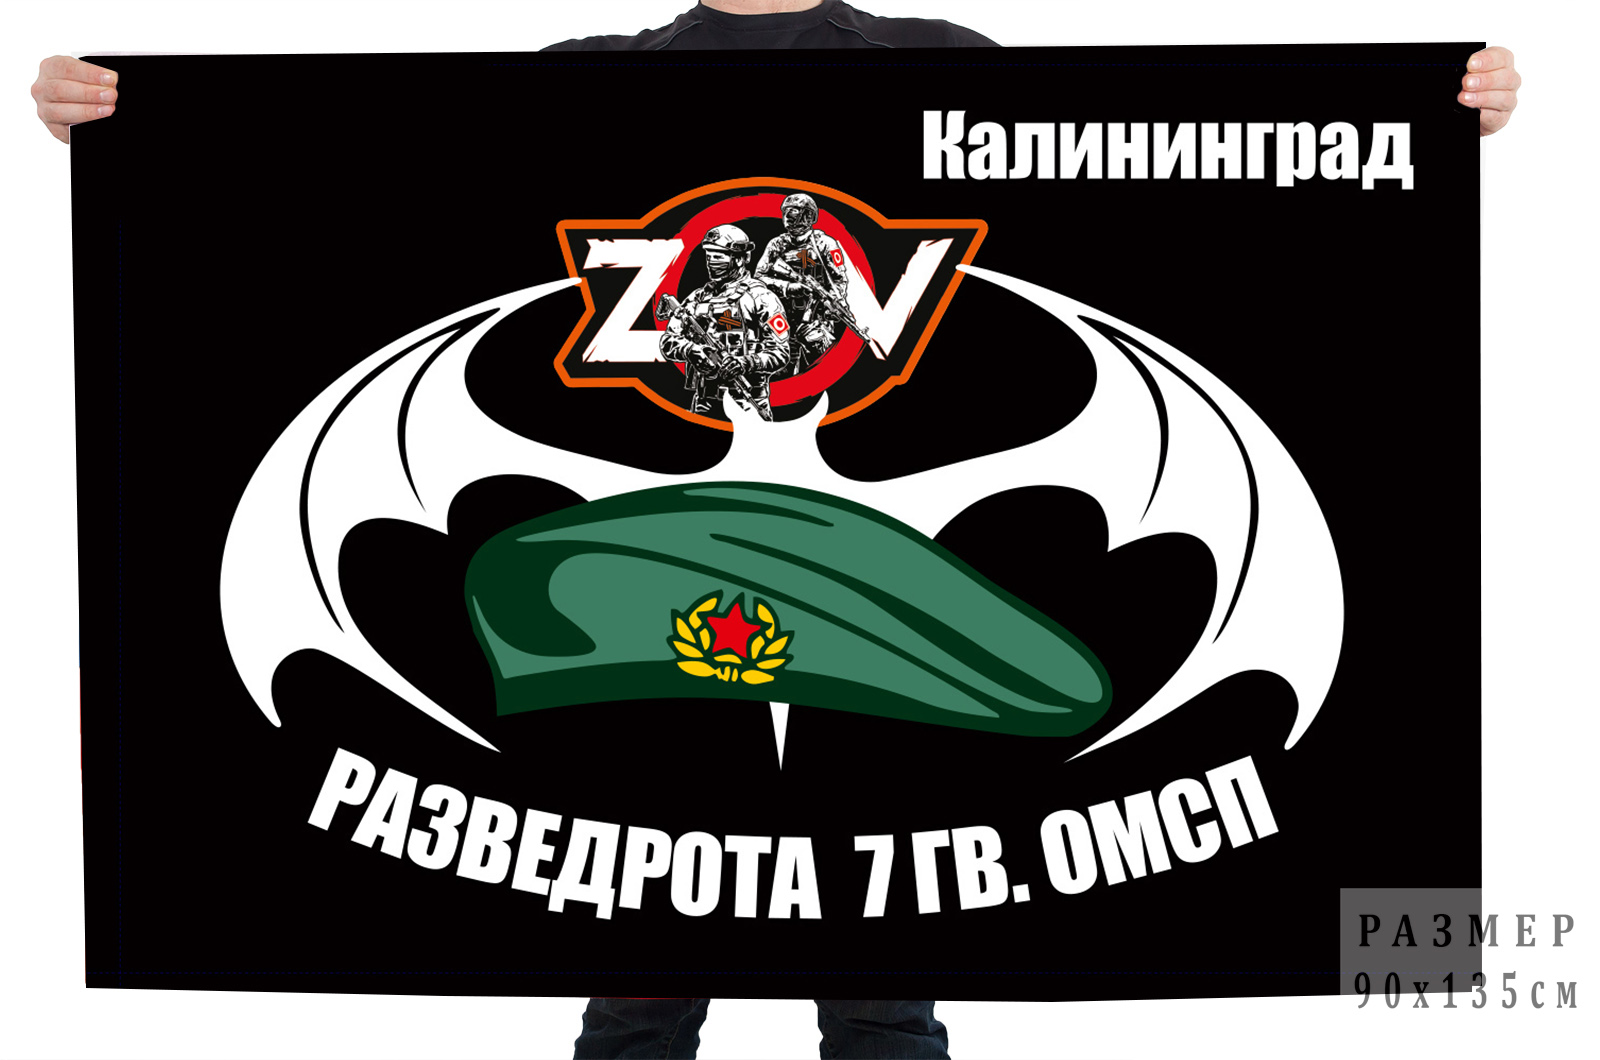 Флаг разведроты 7 гв. ОМСП "Спецоперация Z"